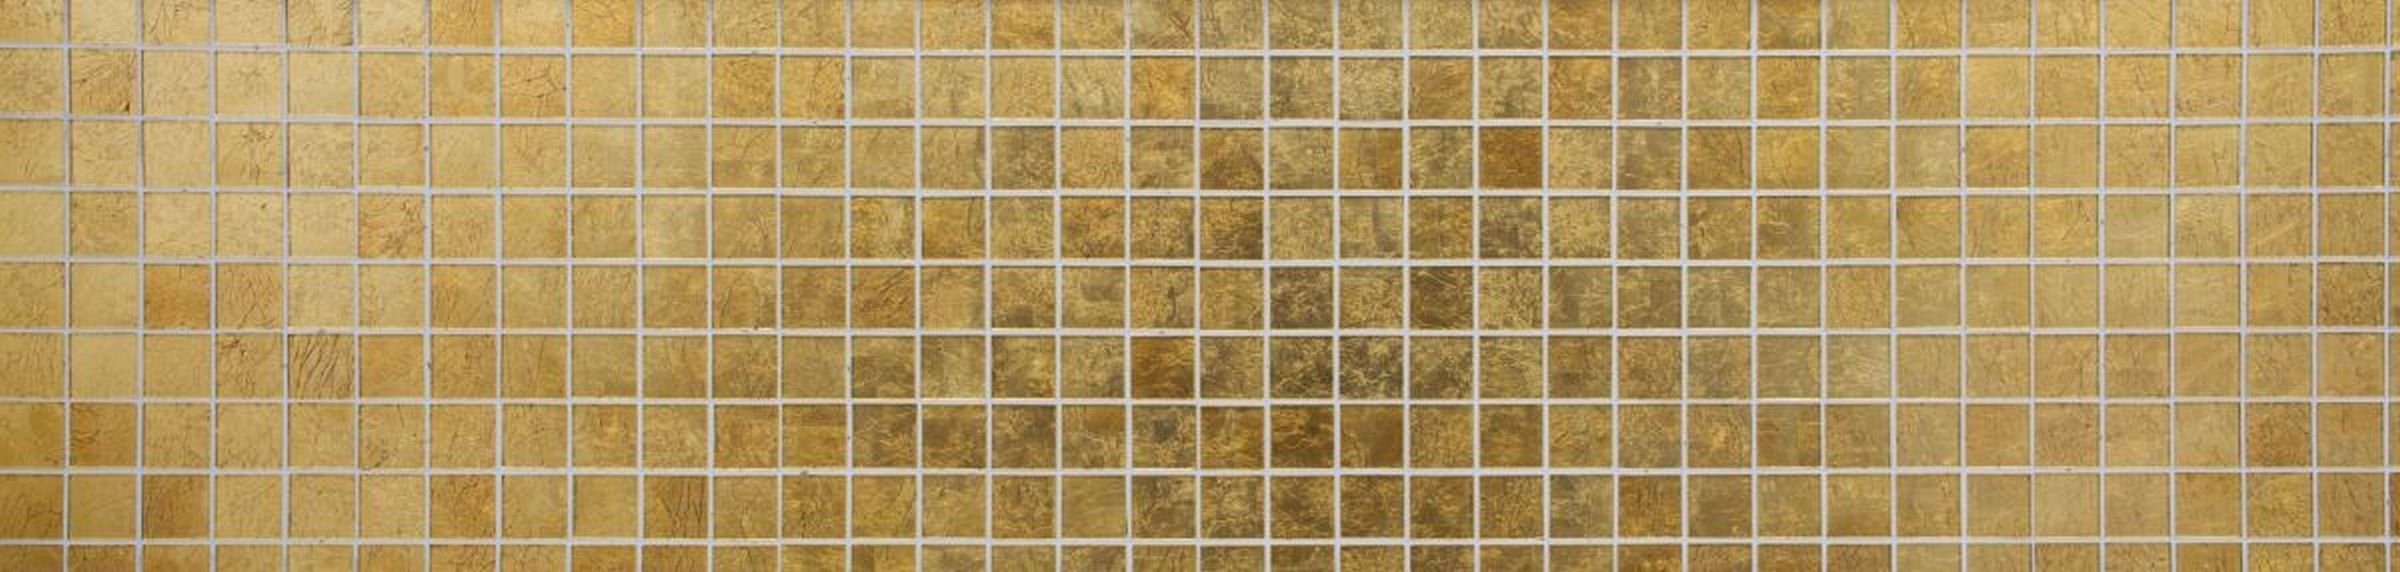 Mosaikfliese Küche Mosaikfliesen Struktur Mosani Fliesenspiegel Glasmosaik gold